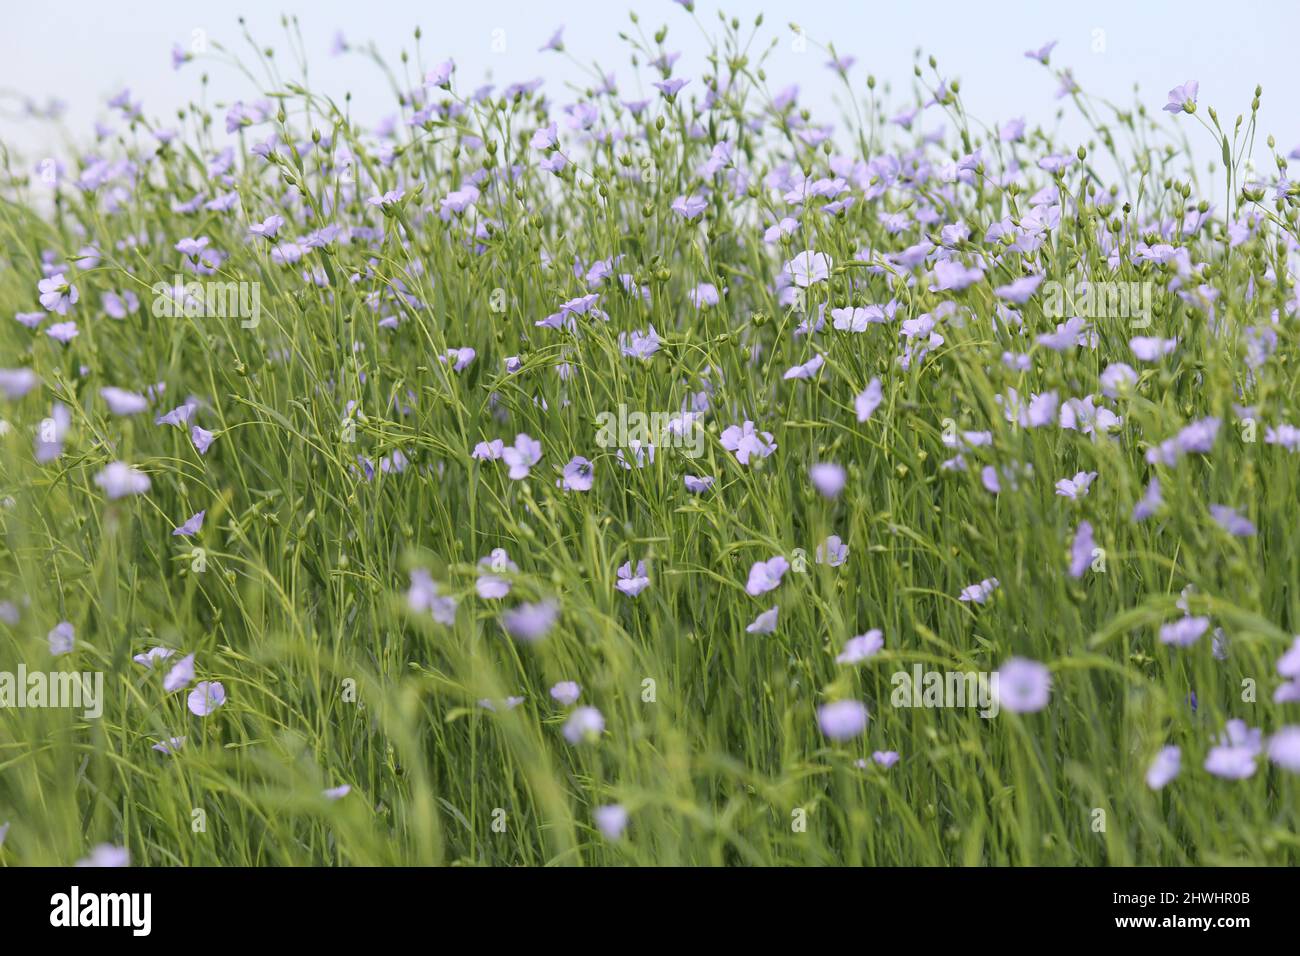 un grande gruppo fiorente di piante di lino con fiori blu e lunghi gambi verdi in primo piano in un campo nella campagna olandese in primavera Foto Stock